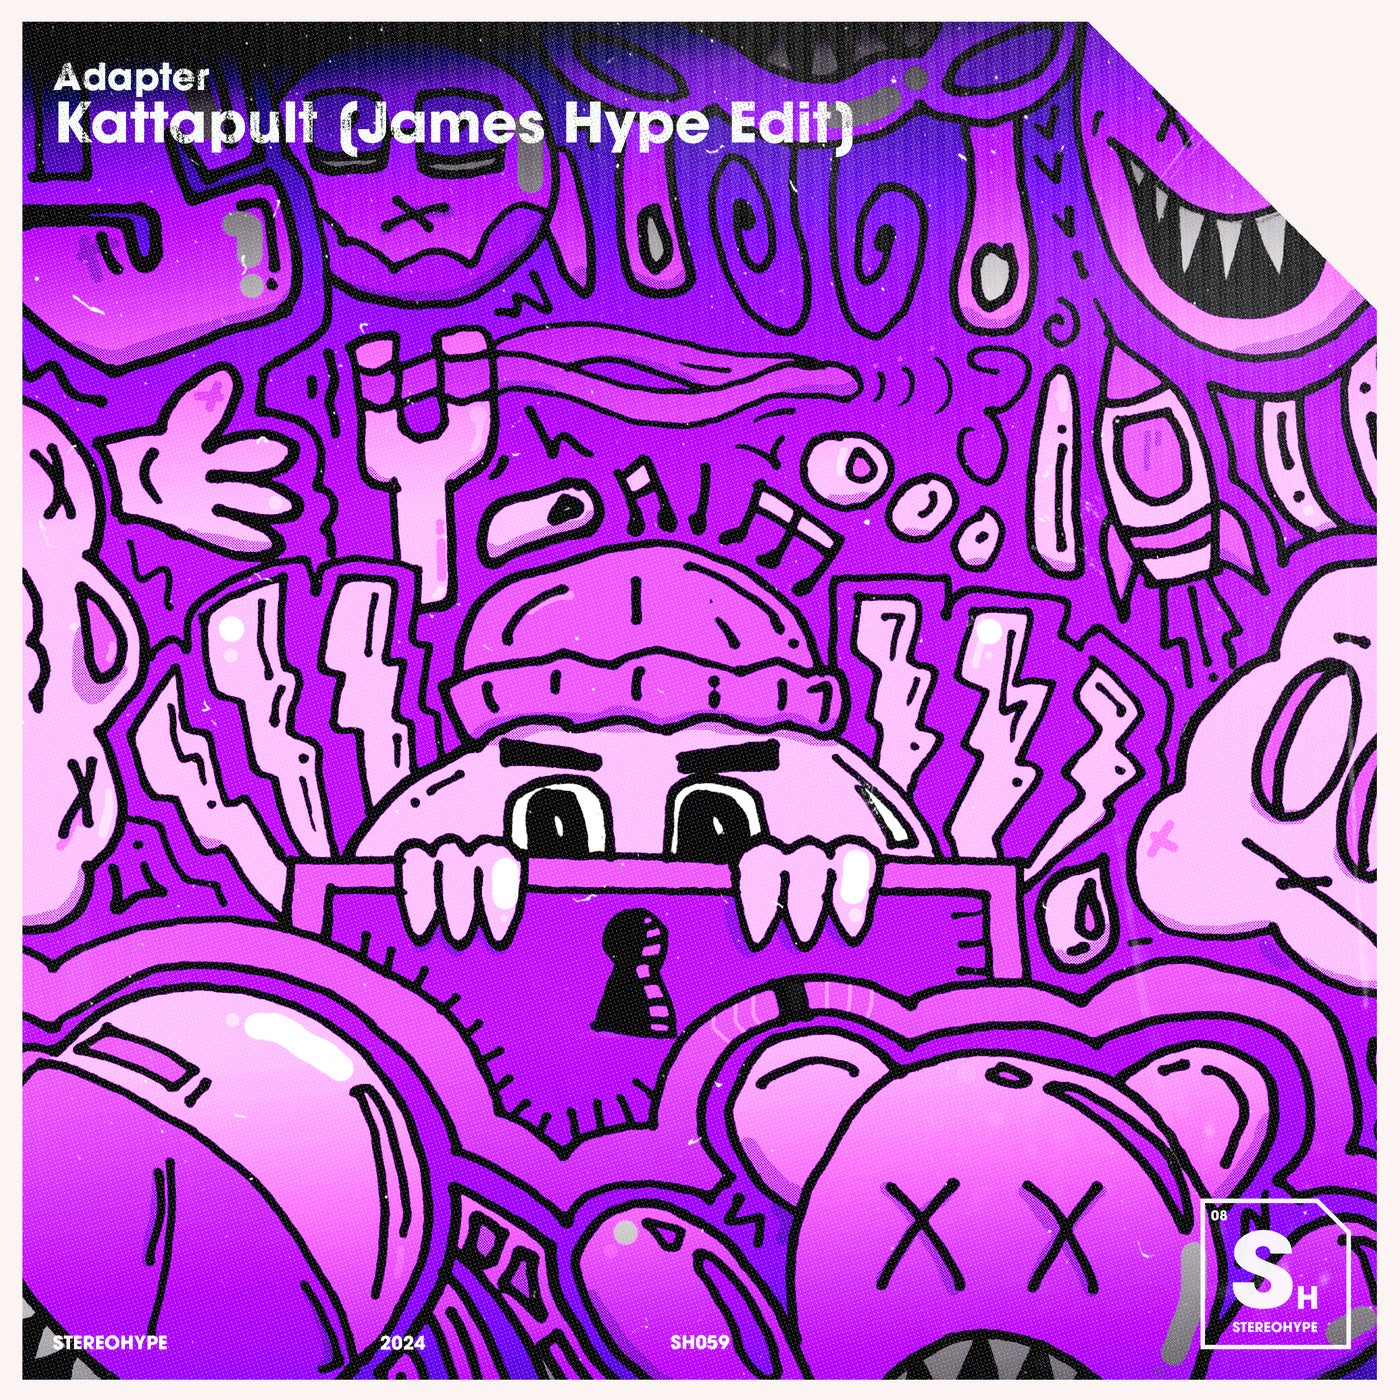 Kattapult (James Hype Edit) [Extended Mix]